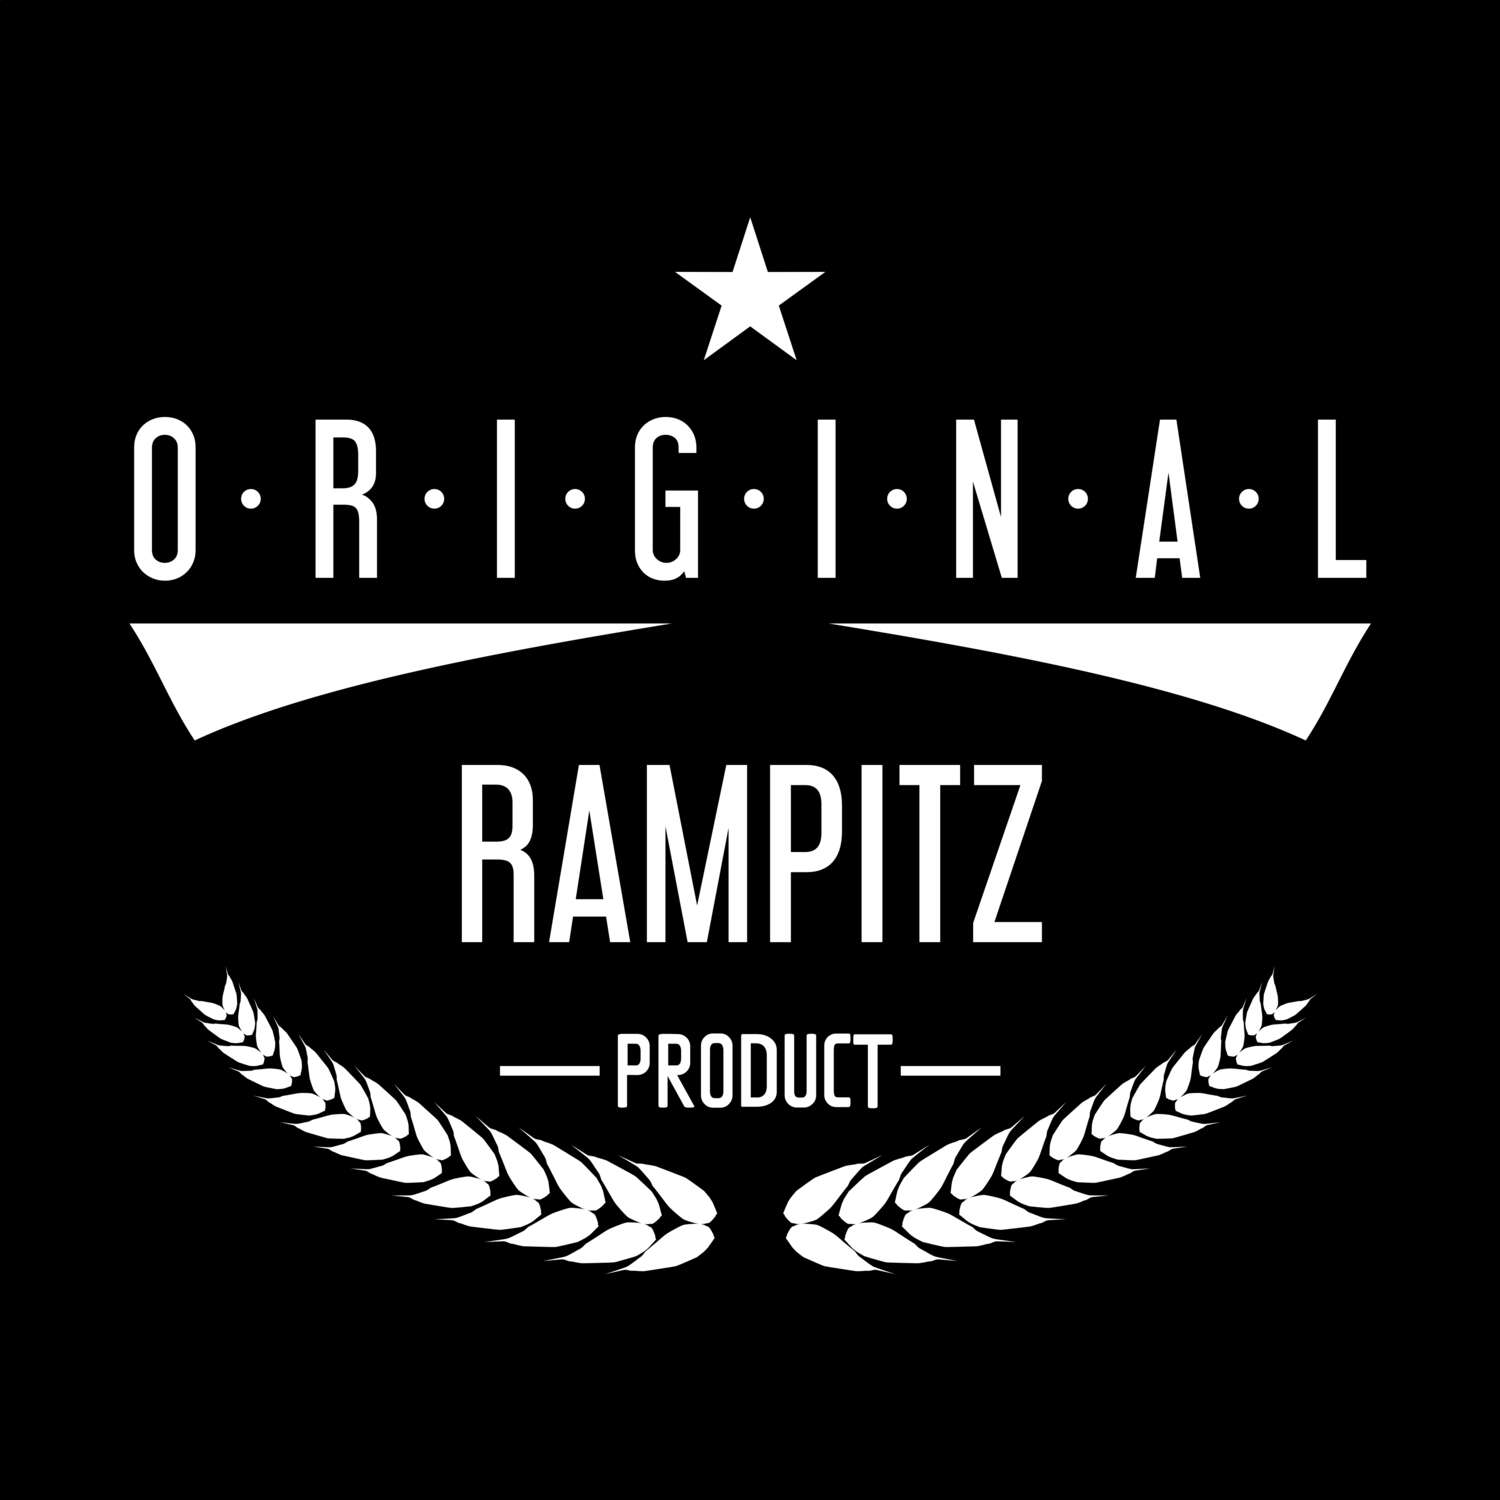 Rampitz T-Shirt »Original Product«